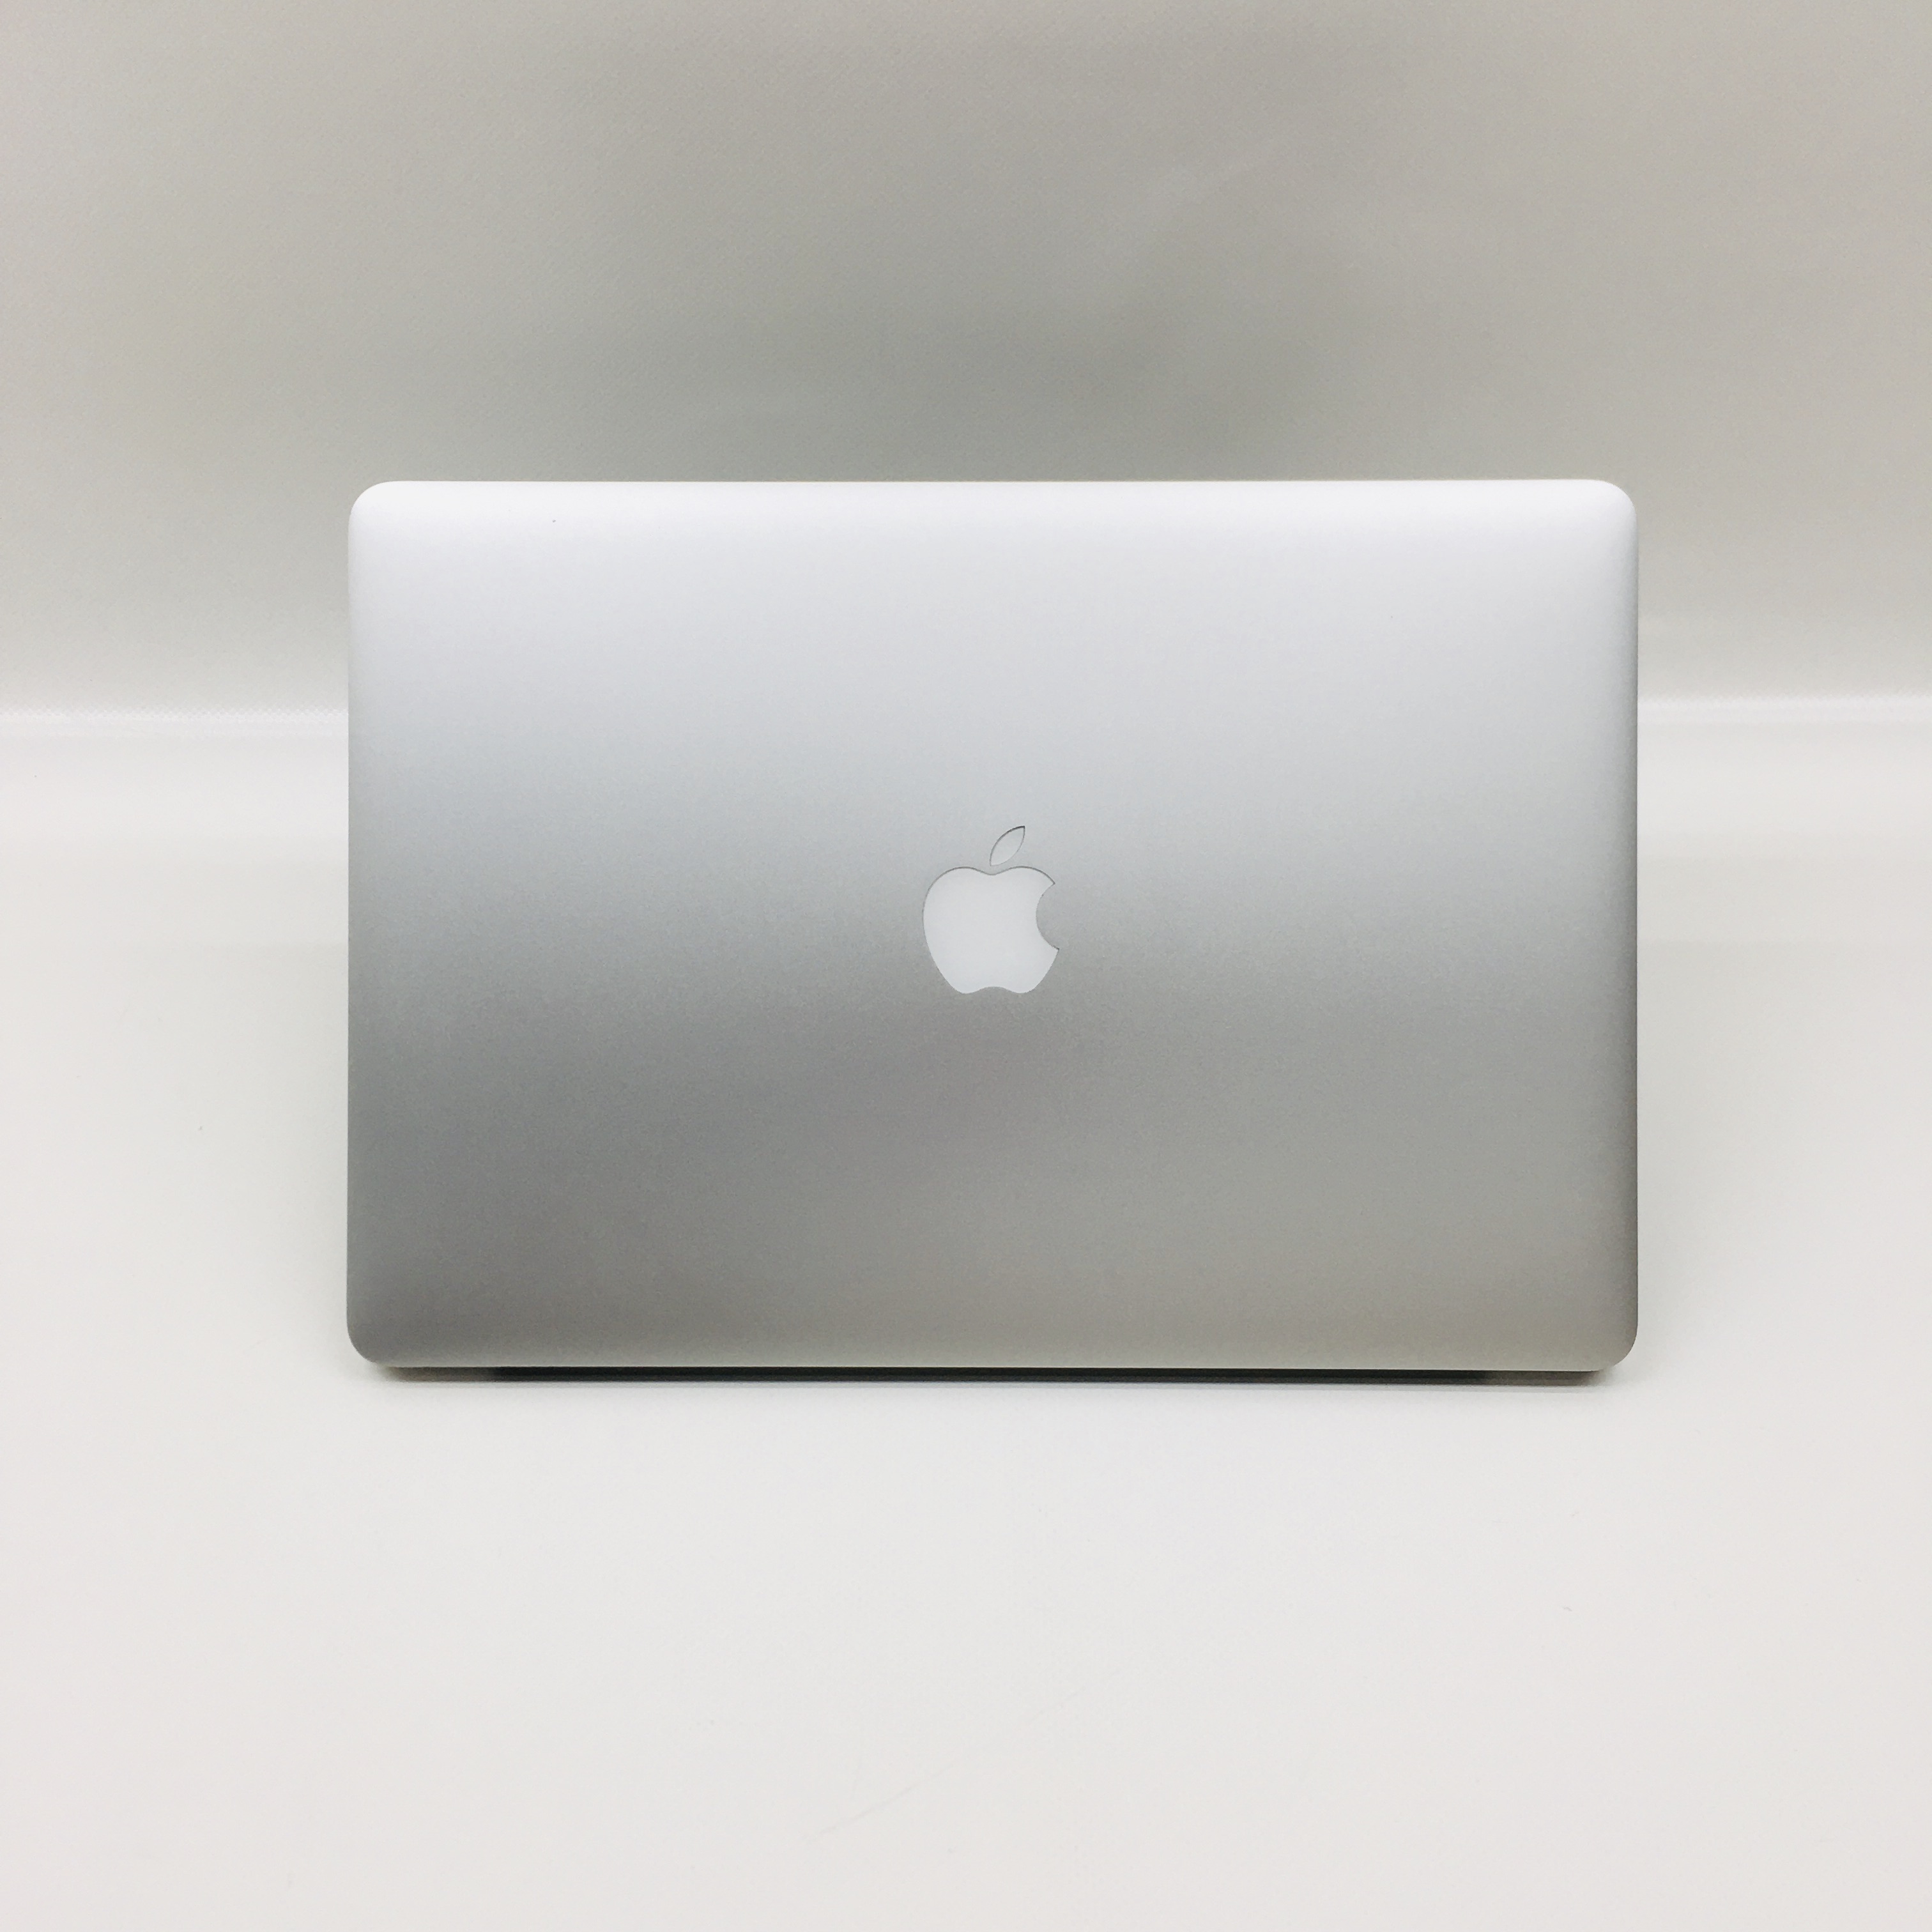 MacBook Pro Retina 15" Mid 2015 (Intel Quad-Core i7 2.2 GHz 16 GB RAM 256 GB SSD), Intel Quad-Core i7 2.2 GHz, 16 GB RAM, 256 GB SSD, image 4